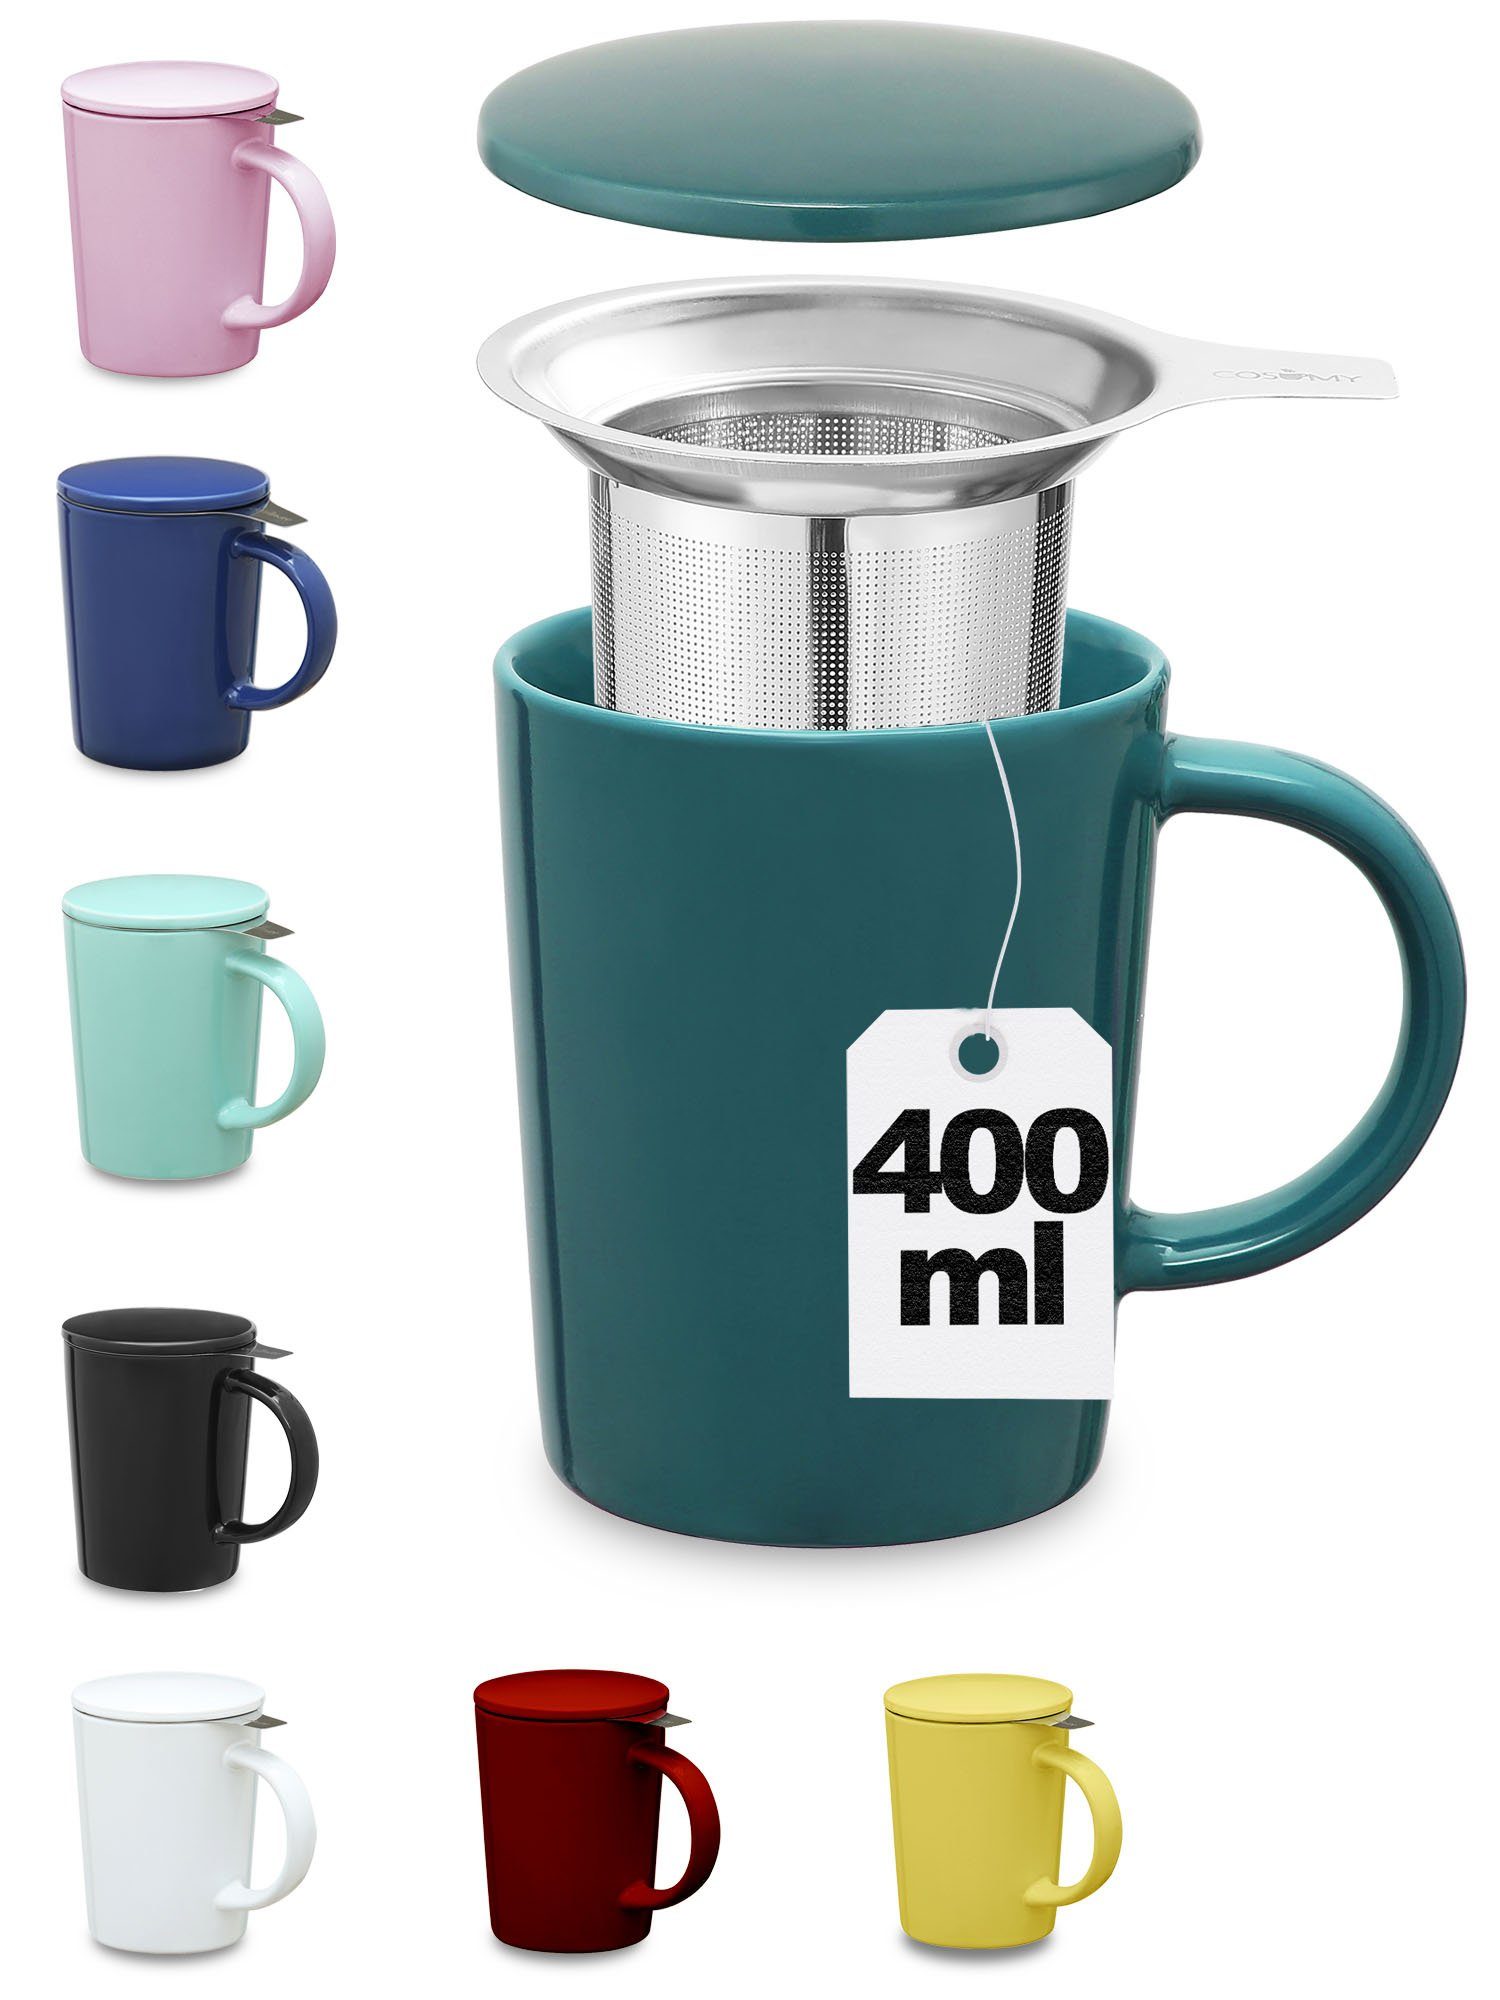 Cosumy Teeglas Teetasse mit Sieb und Deckel Blaugrün 400ml, Keramik, Hält  Lange warm - 400ml Groß - Spülmaschinenfest